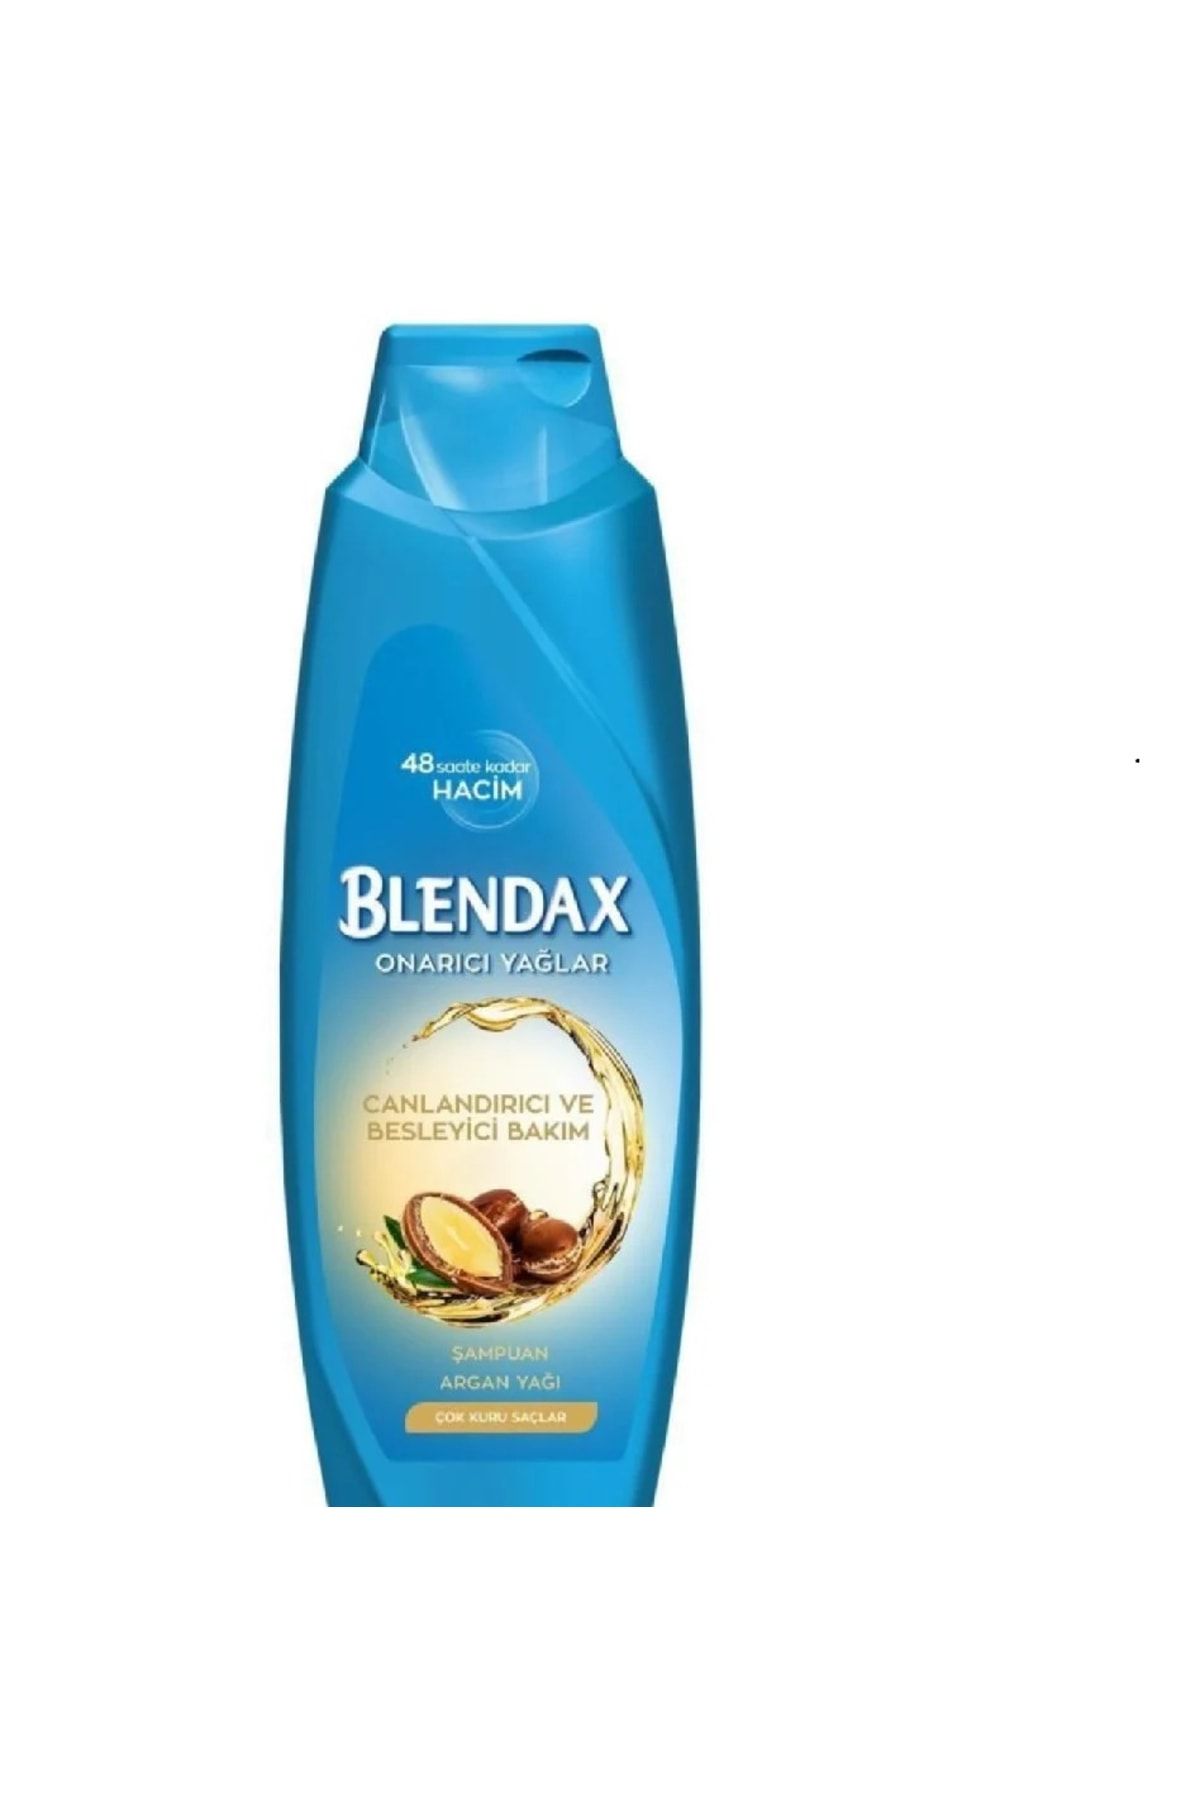 Blendax Argan Yağlı Onarıcı Ve Besleyici Bakım Şampuanı 360 Ml